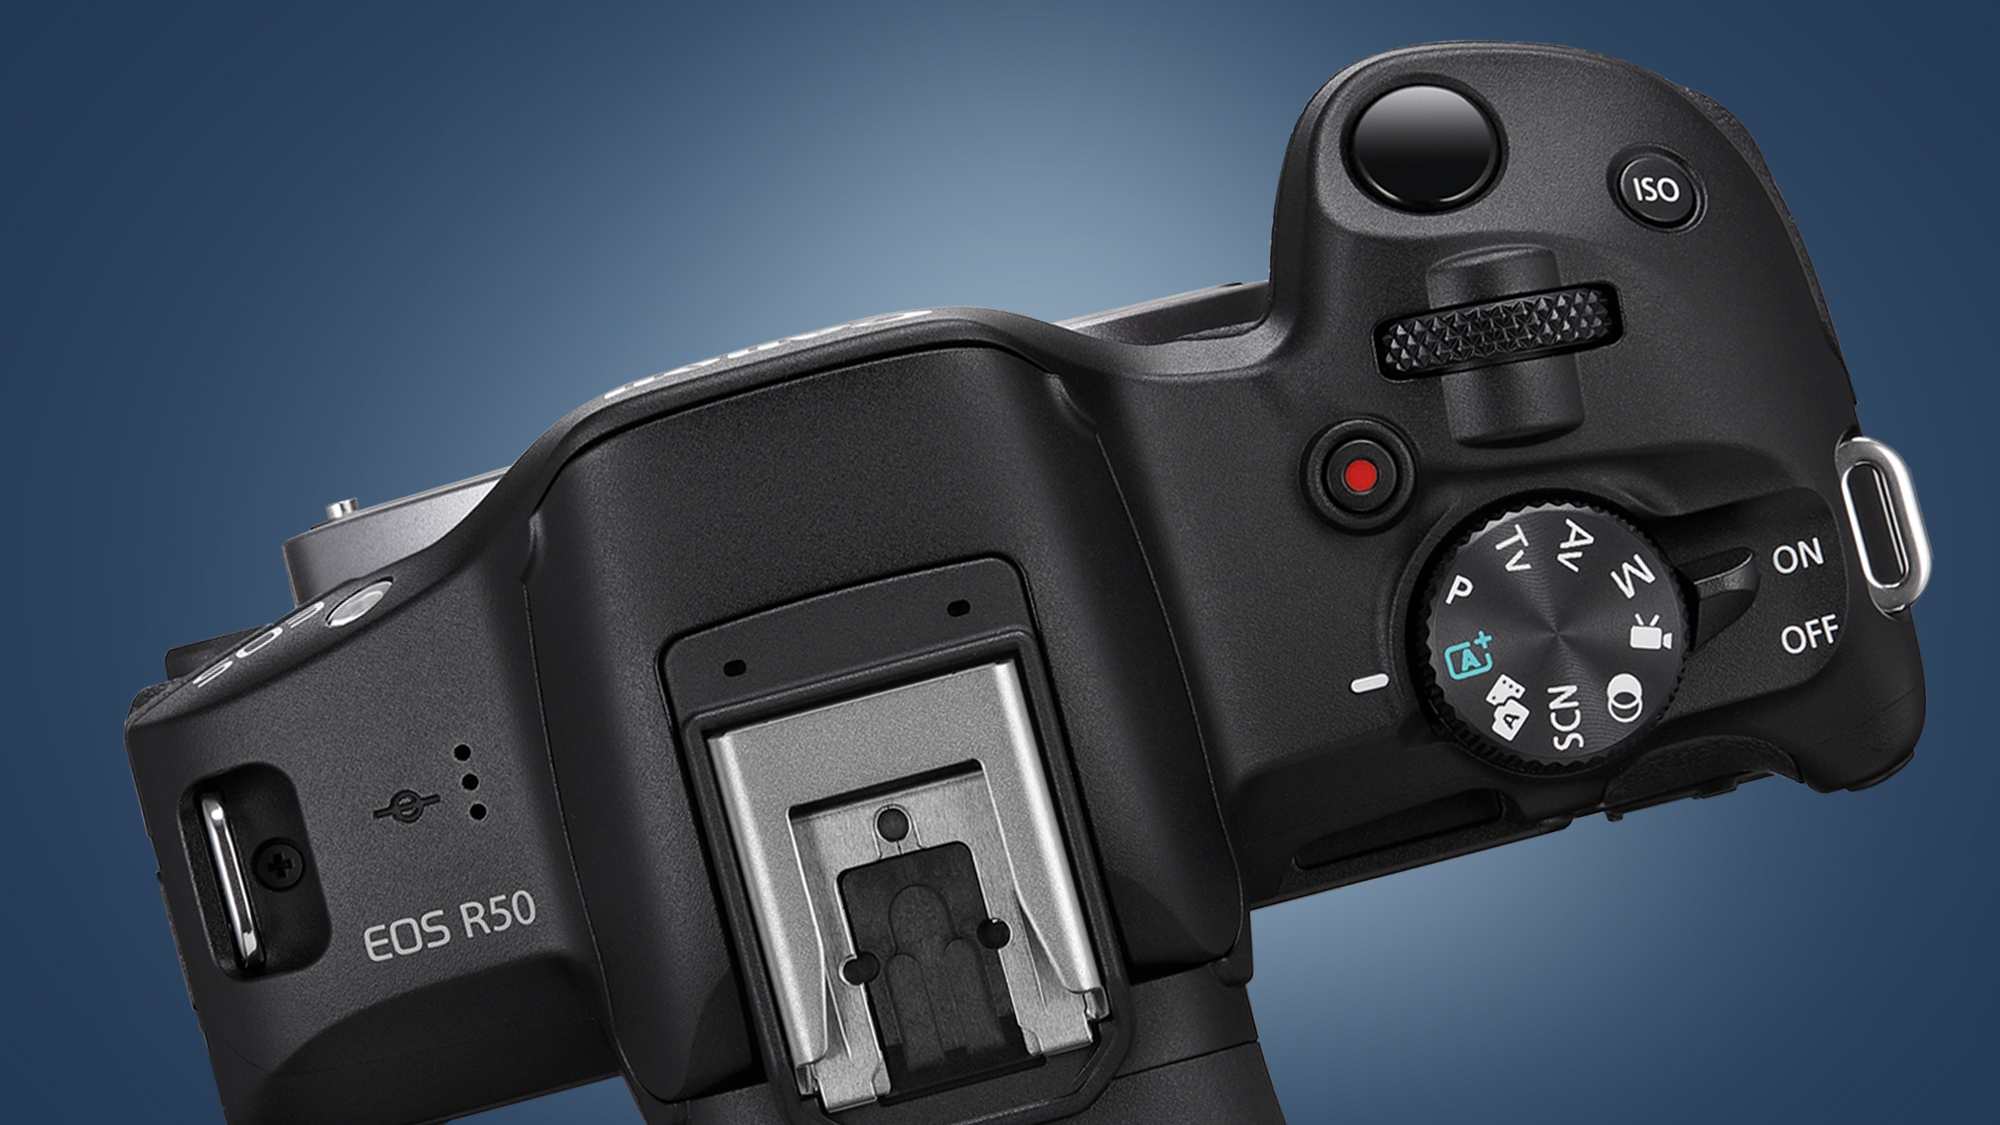 La parte superior de la cámara Canon EOS R50 sobre un fondo azul